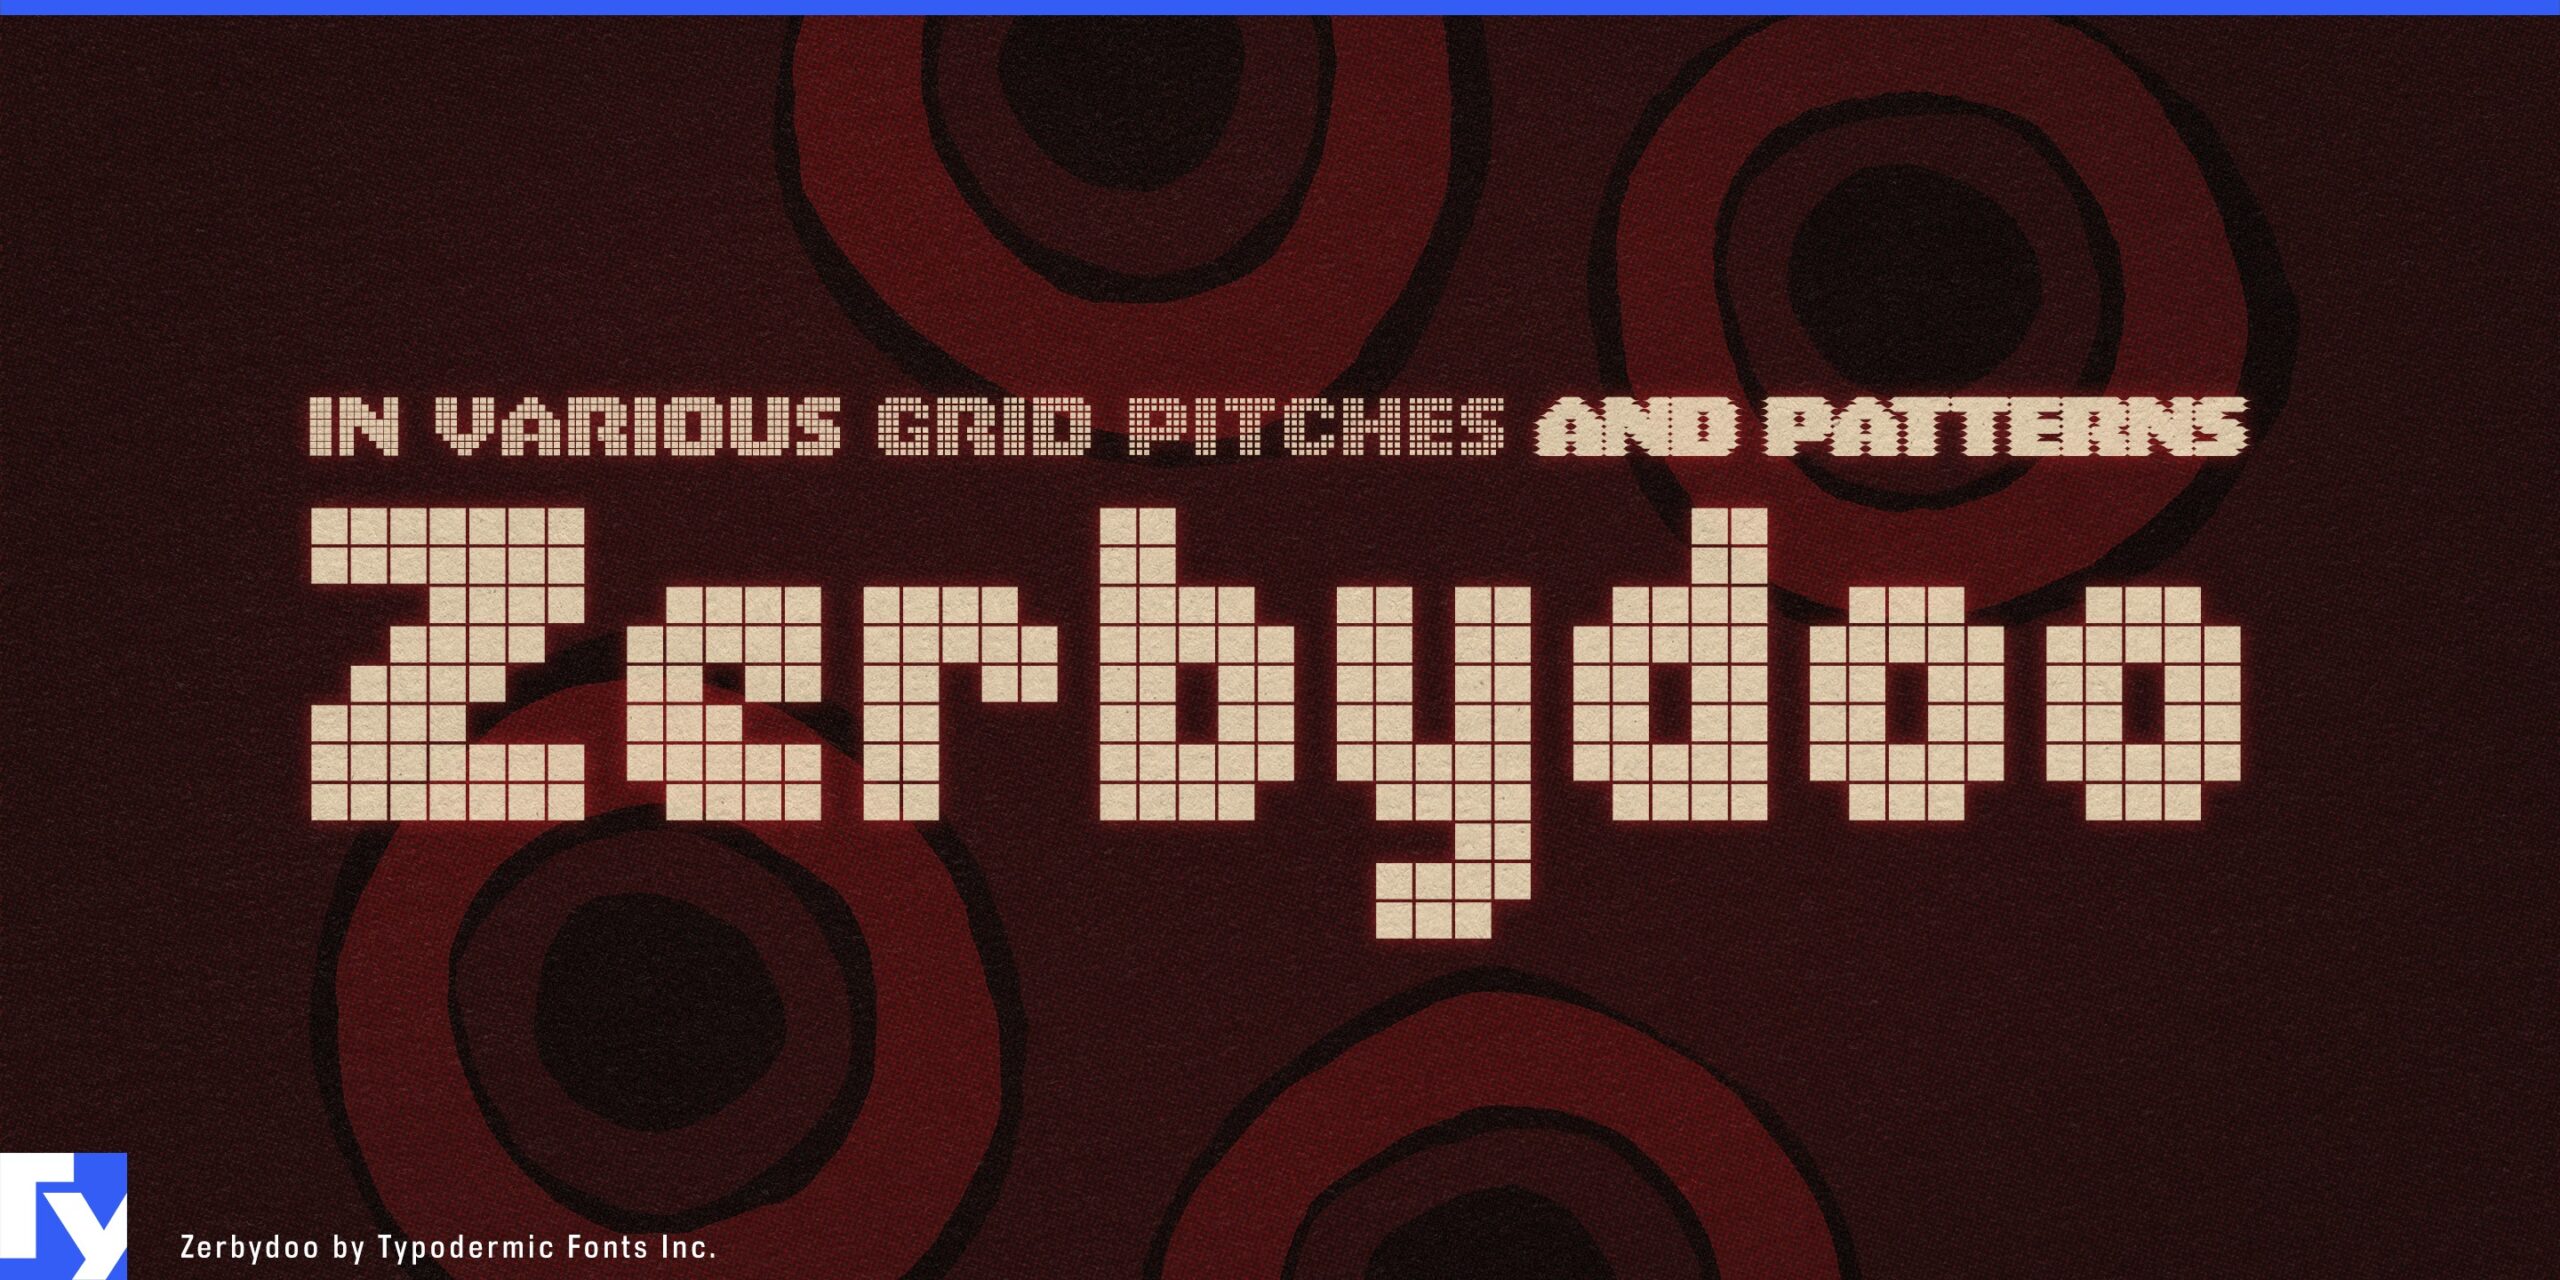 Vintage Gaming Vibe: Zerbydoo Typeface Awakens Memories